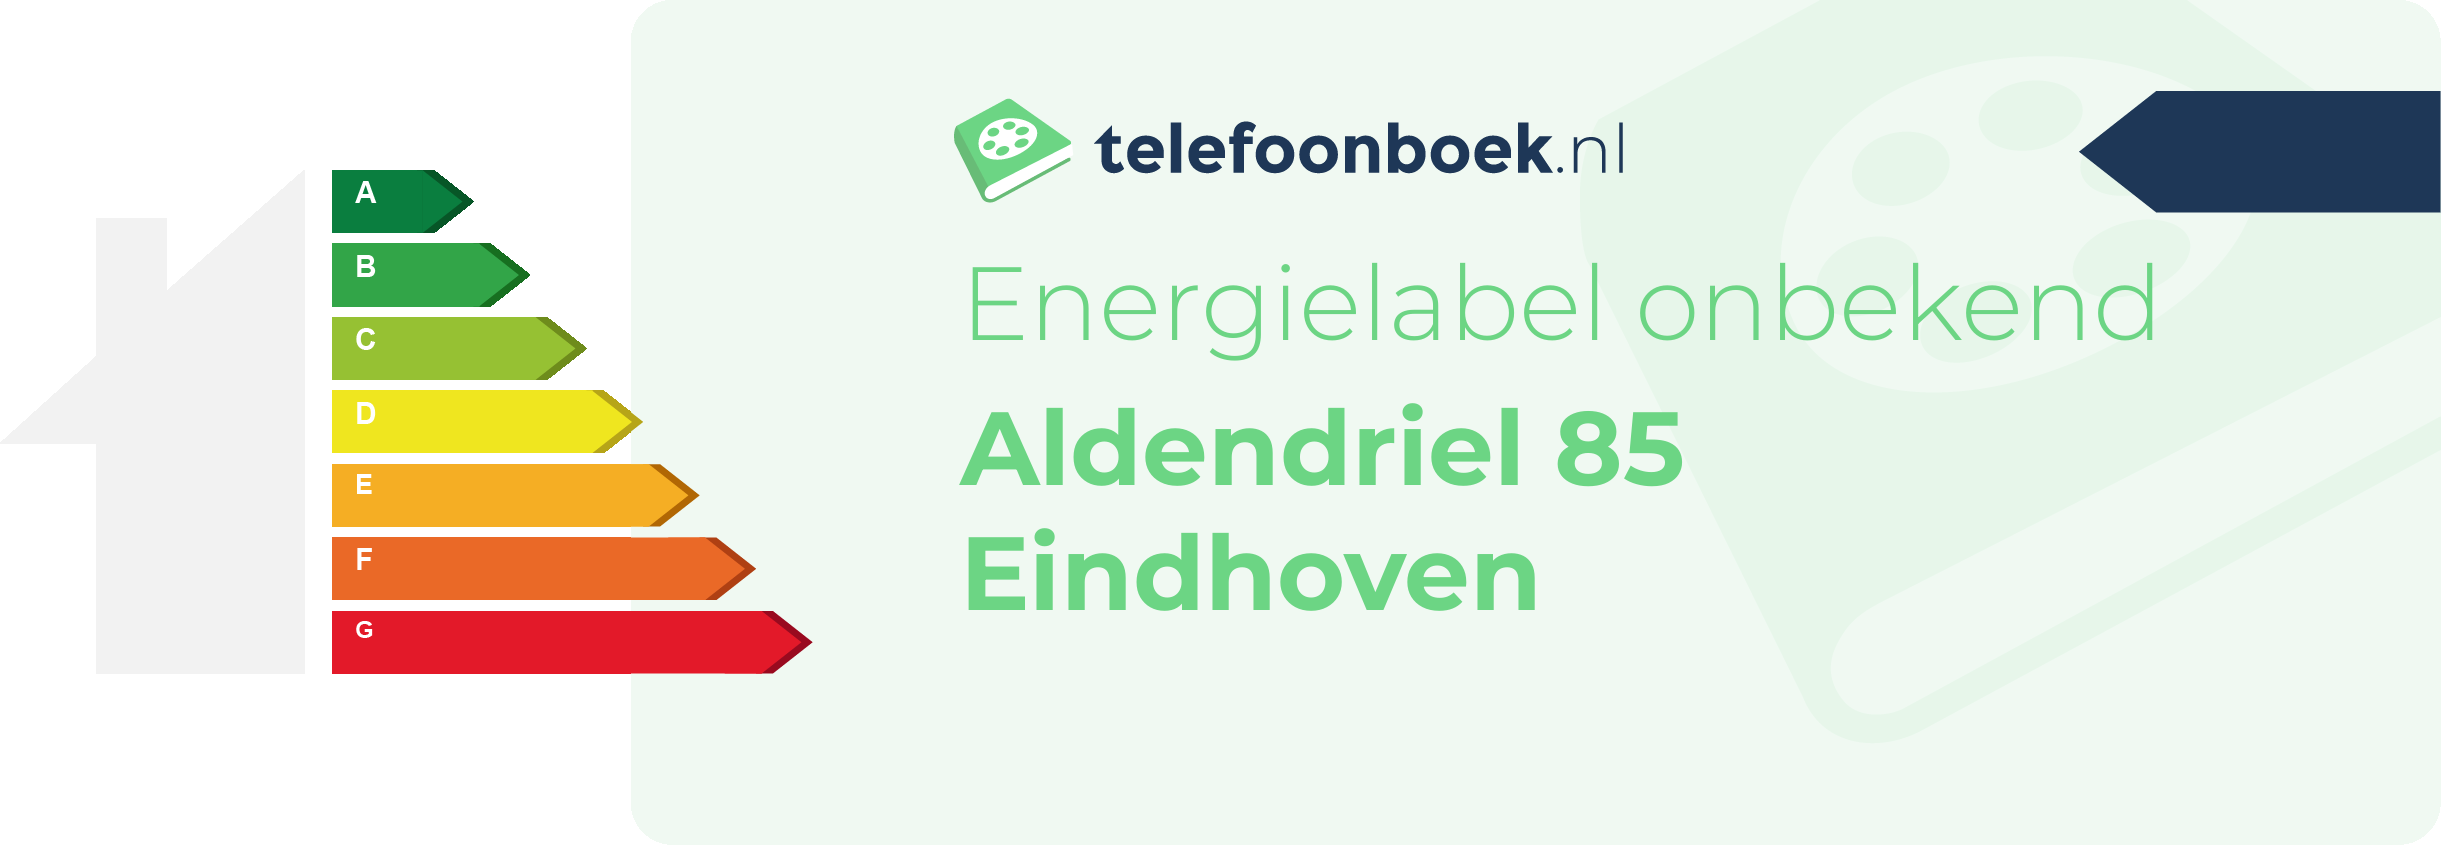 Energielabel Aldendriel 85 Eindhoven